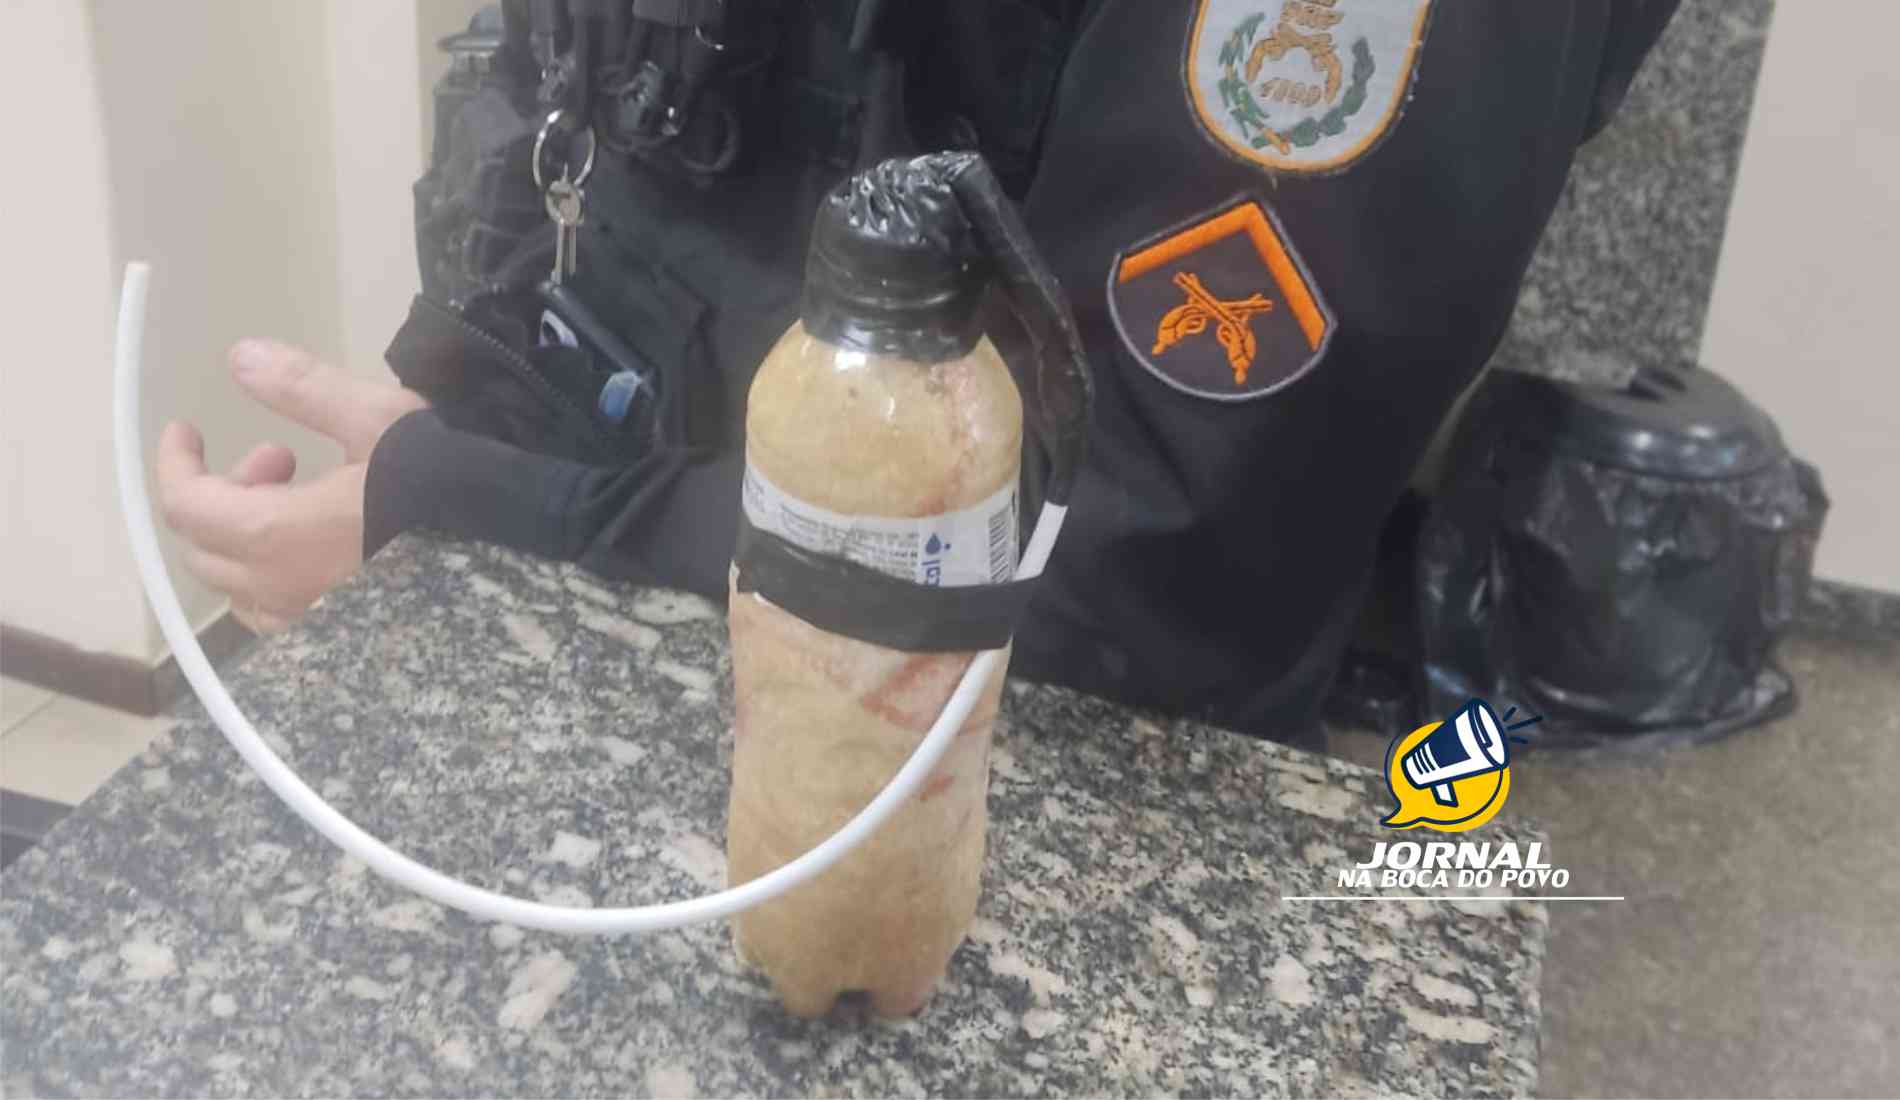 Militares do 36°BPM apreende artefato explosivo em Pádua